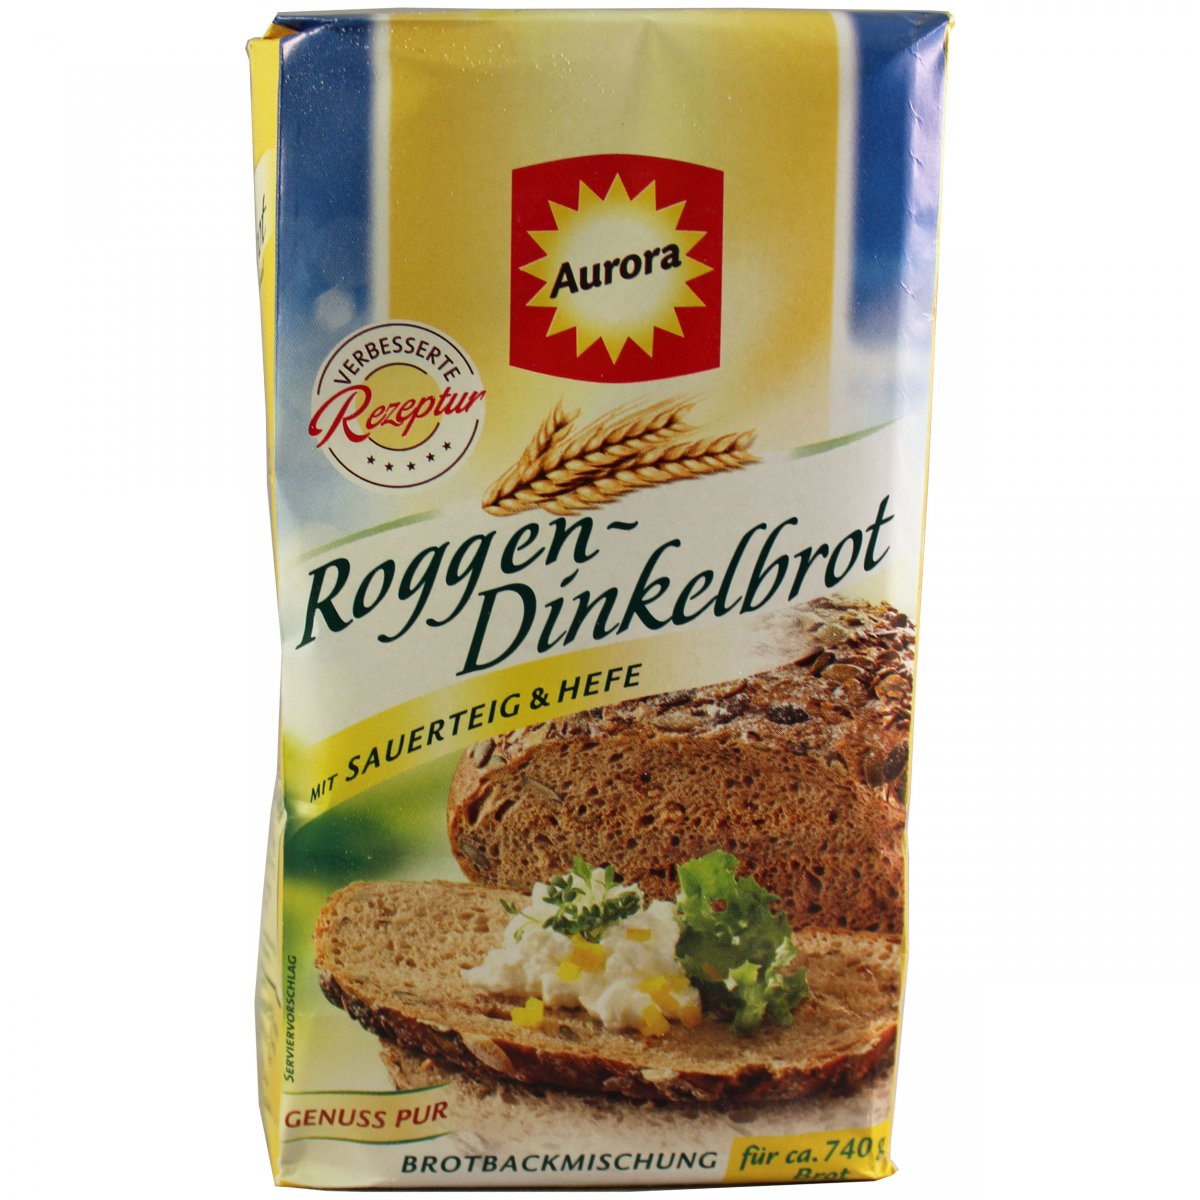 Aurora - Roggen - Dinkelbrot (Rye Bread) Bread Mix | European Grocery